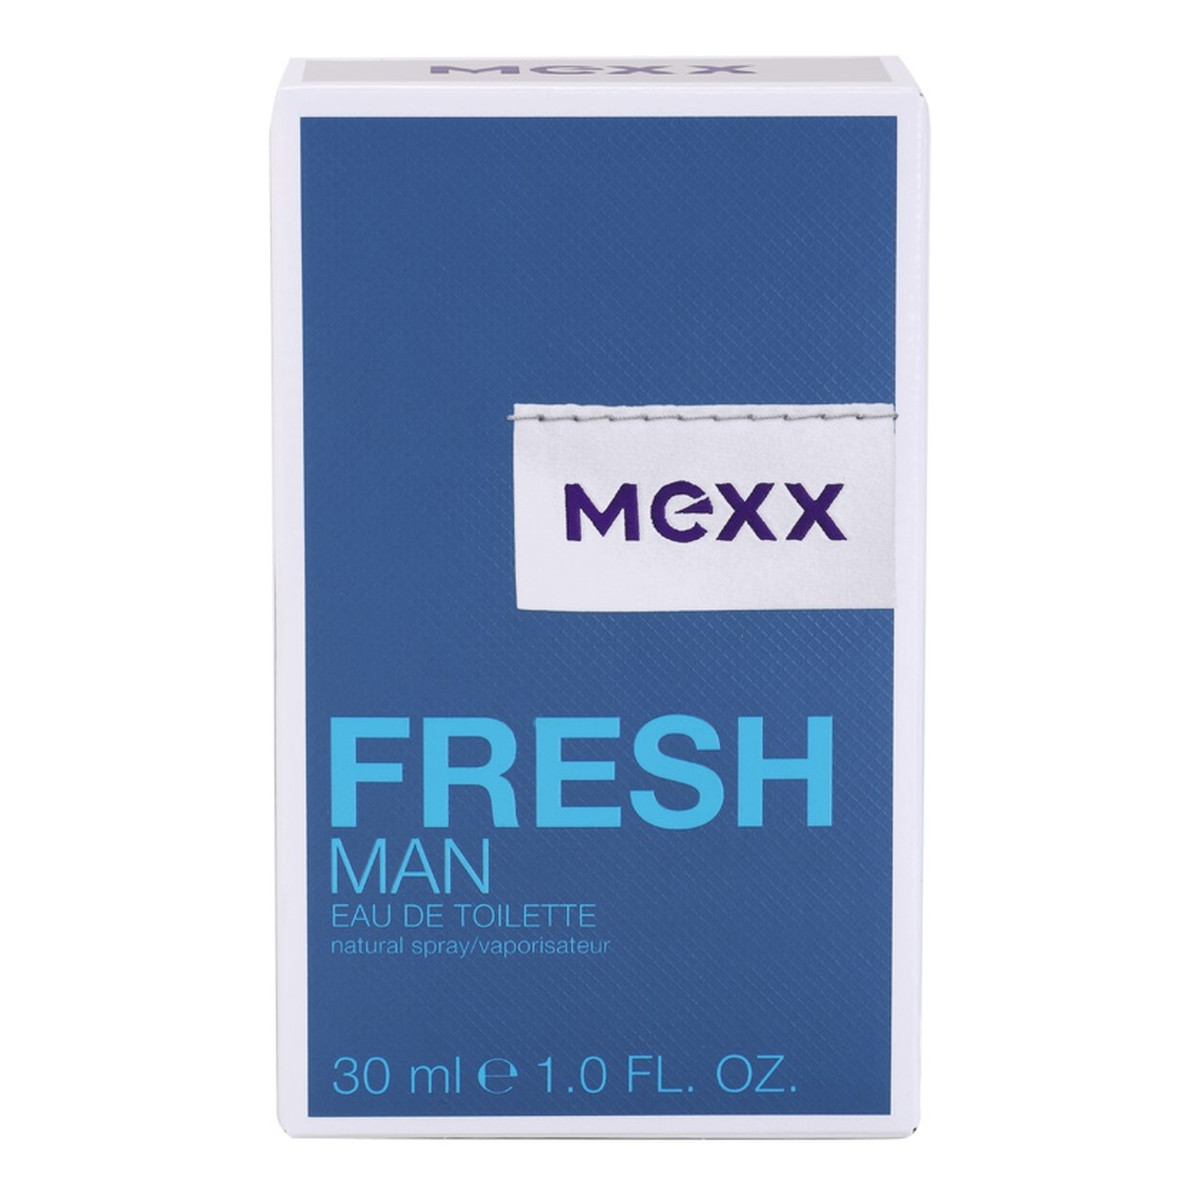 Mexx Fresh Man woda toaletowa dla mężczyzn 30ml